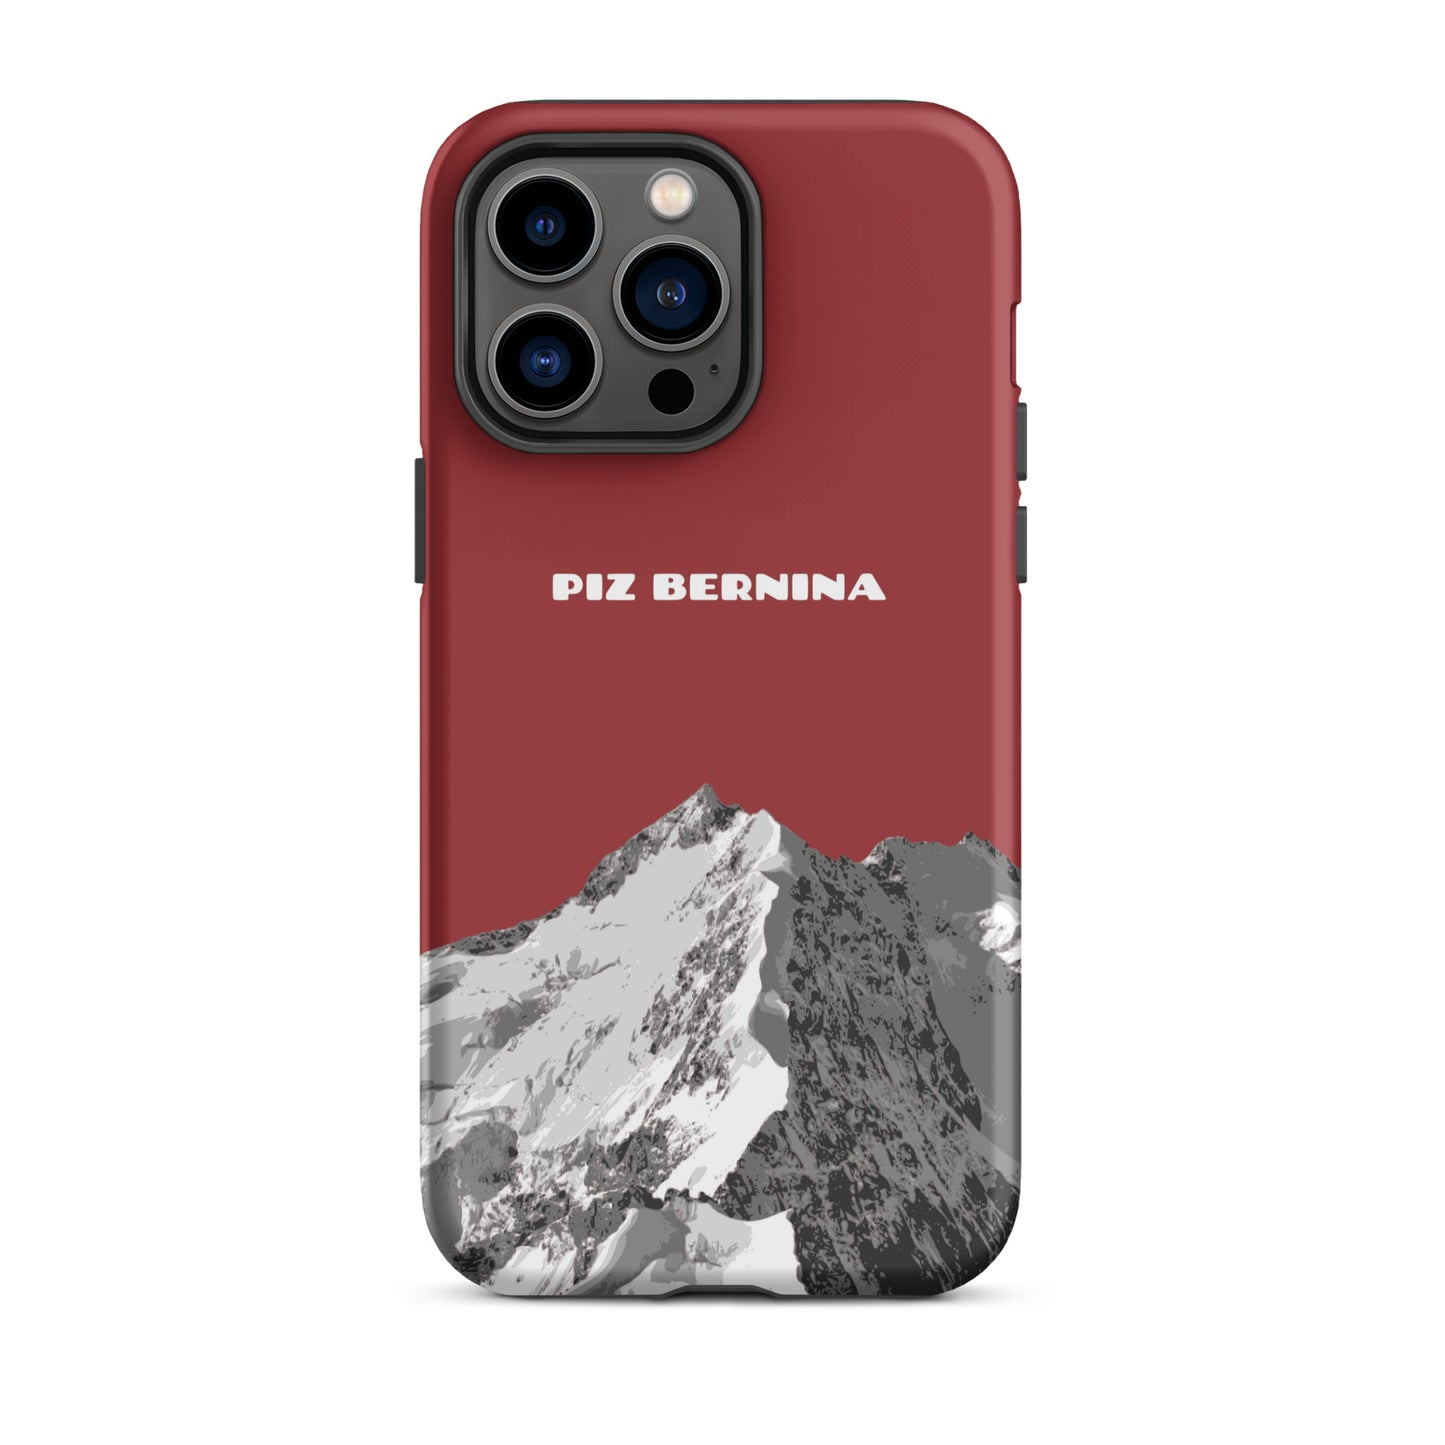 Hülle für das iPhone 14 Pro Max von Apple in der Farbe Rot, dass den Piz Bernina in Graubünden zeigt.